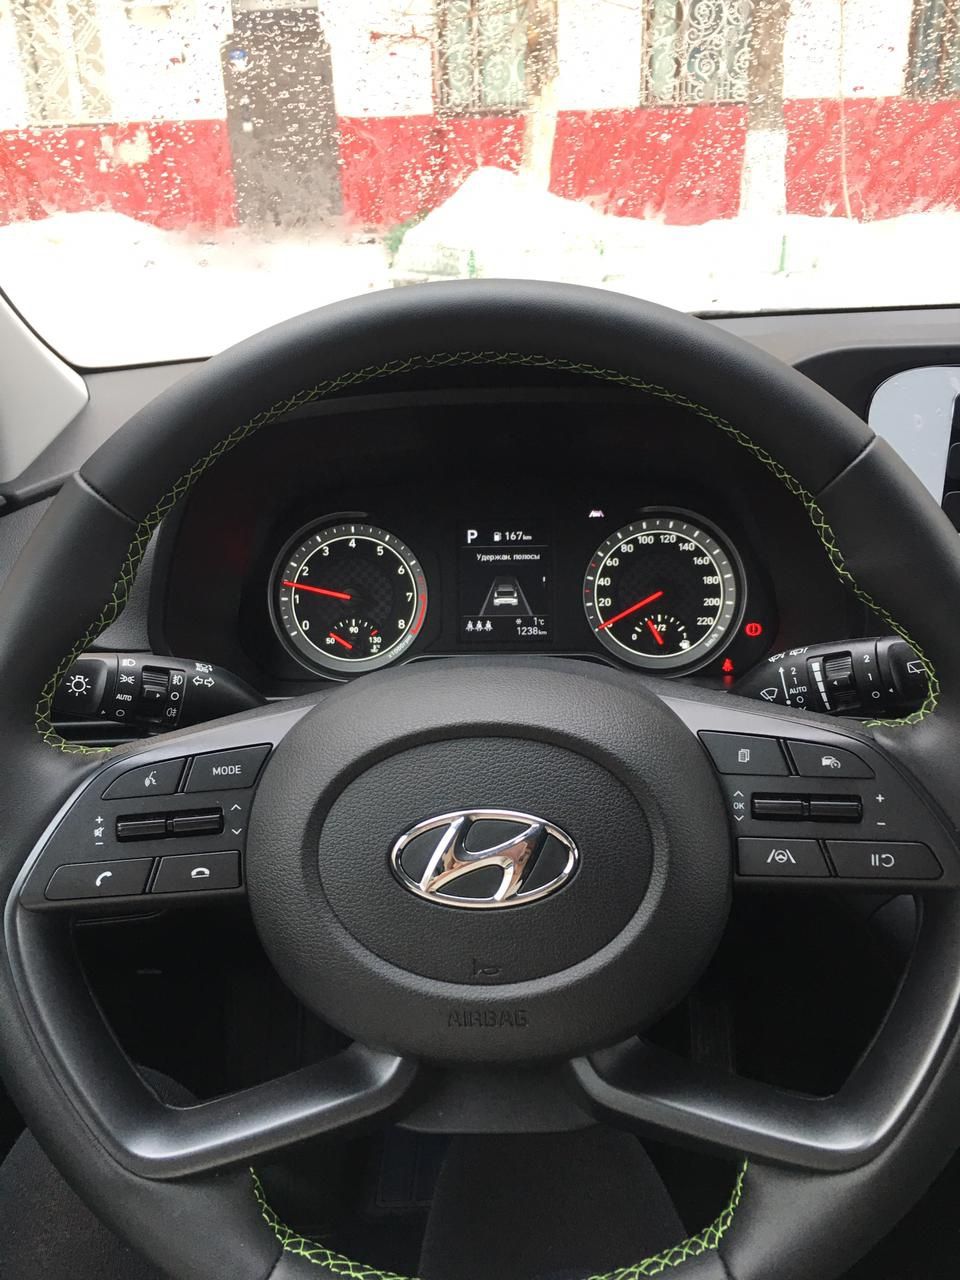 Продам Hyundai i-20 в новом состоянии, полный комплектация